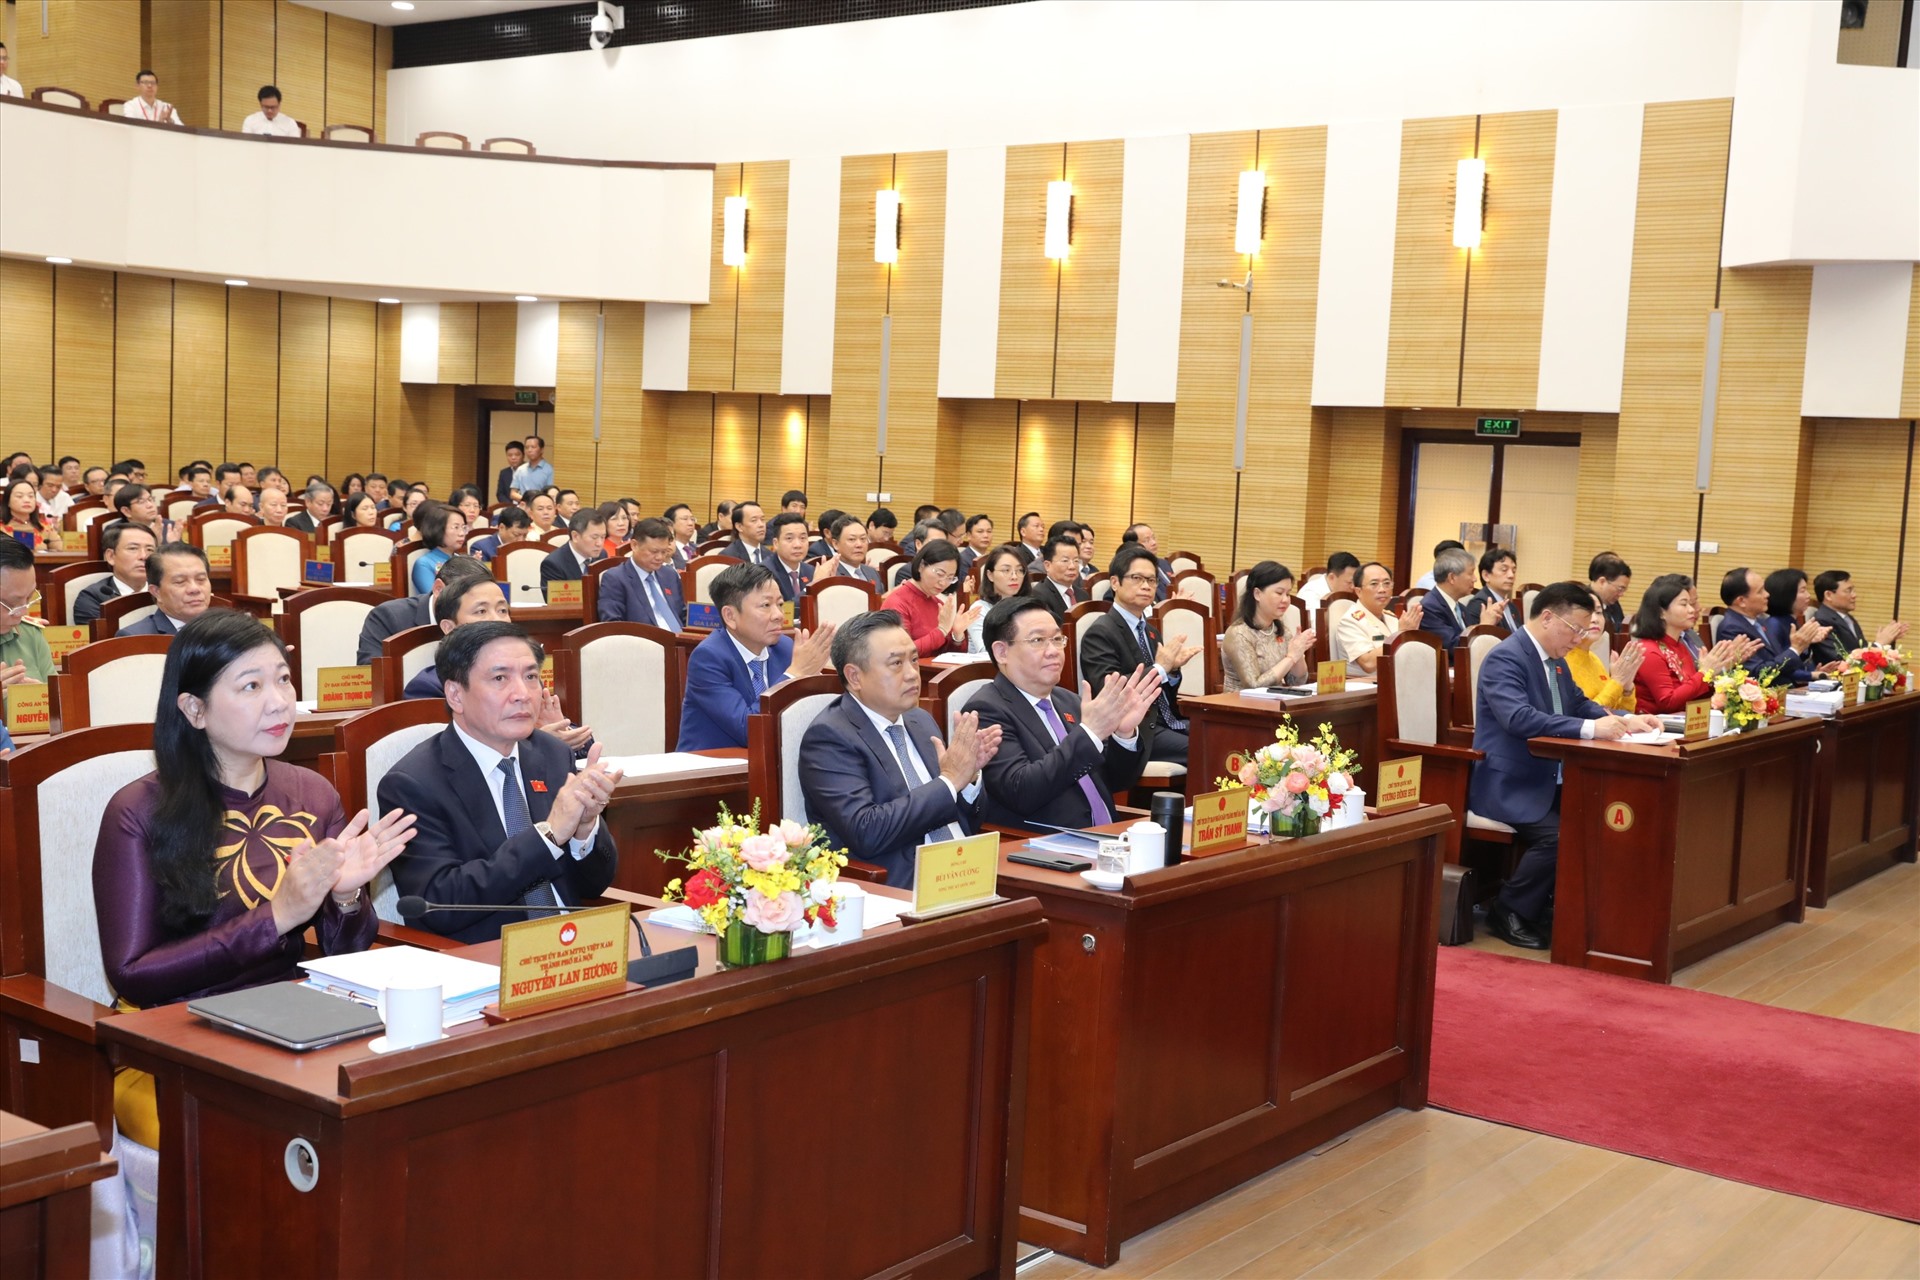 Chủ tịch Quốc hội Vương Đình Huệ và các đại biểu dự khai mạc kỳ họp thứ 12, HĐND TP Hà Nội. Ảnh: Phạm Đông